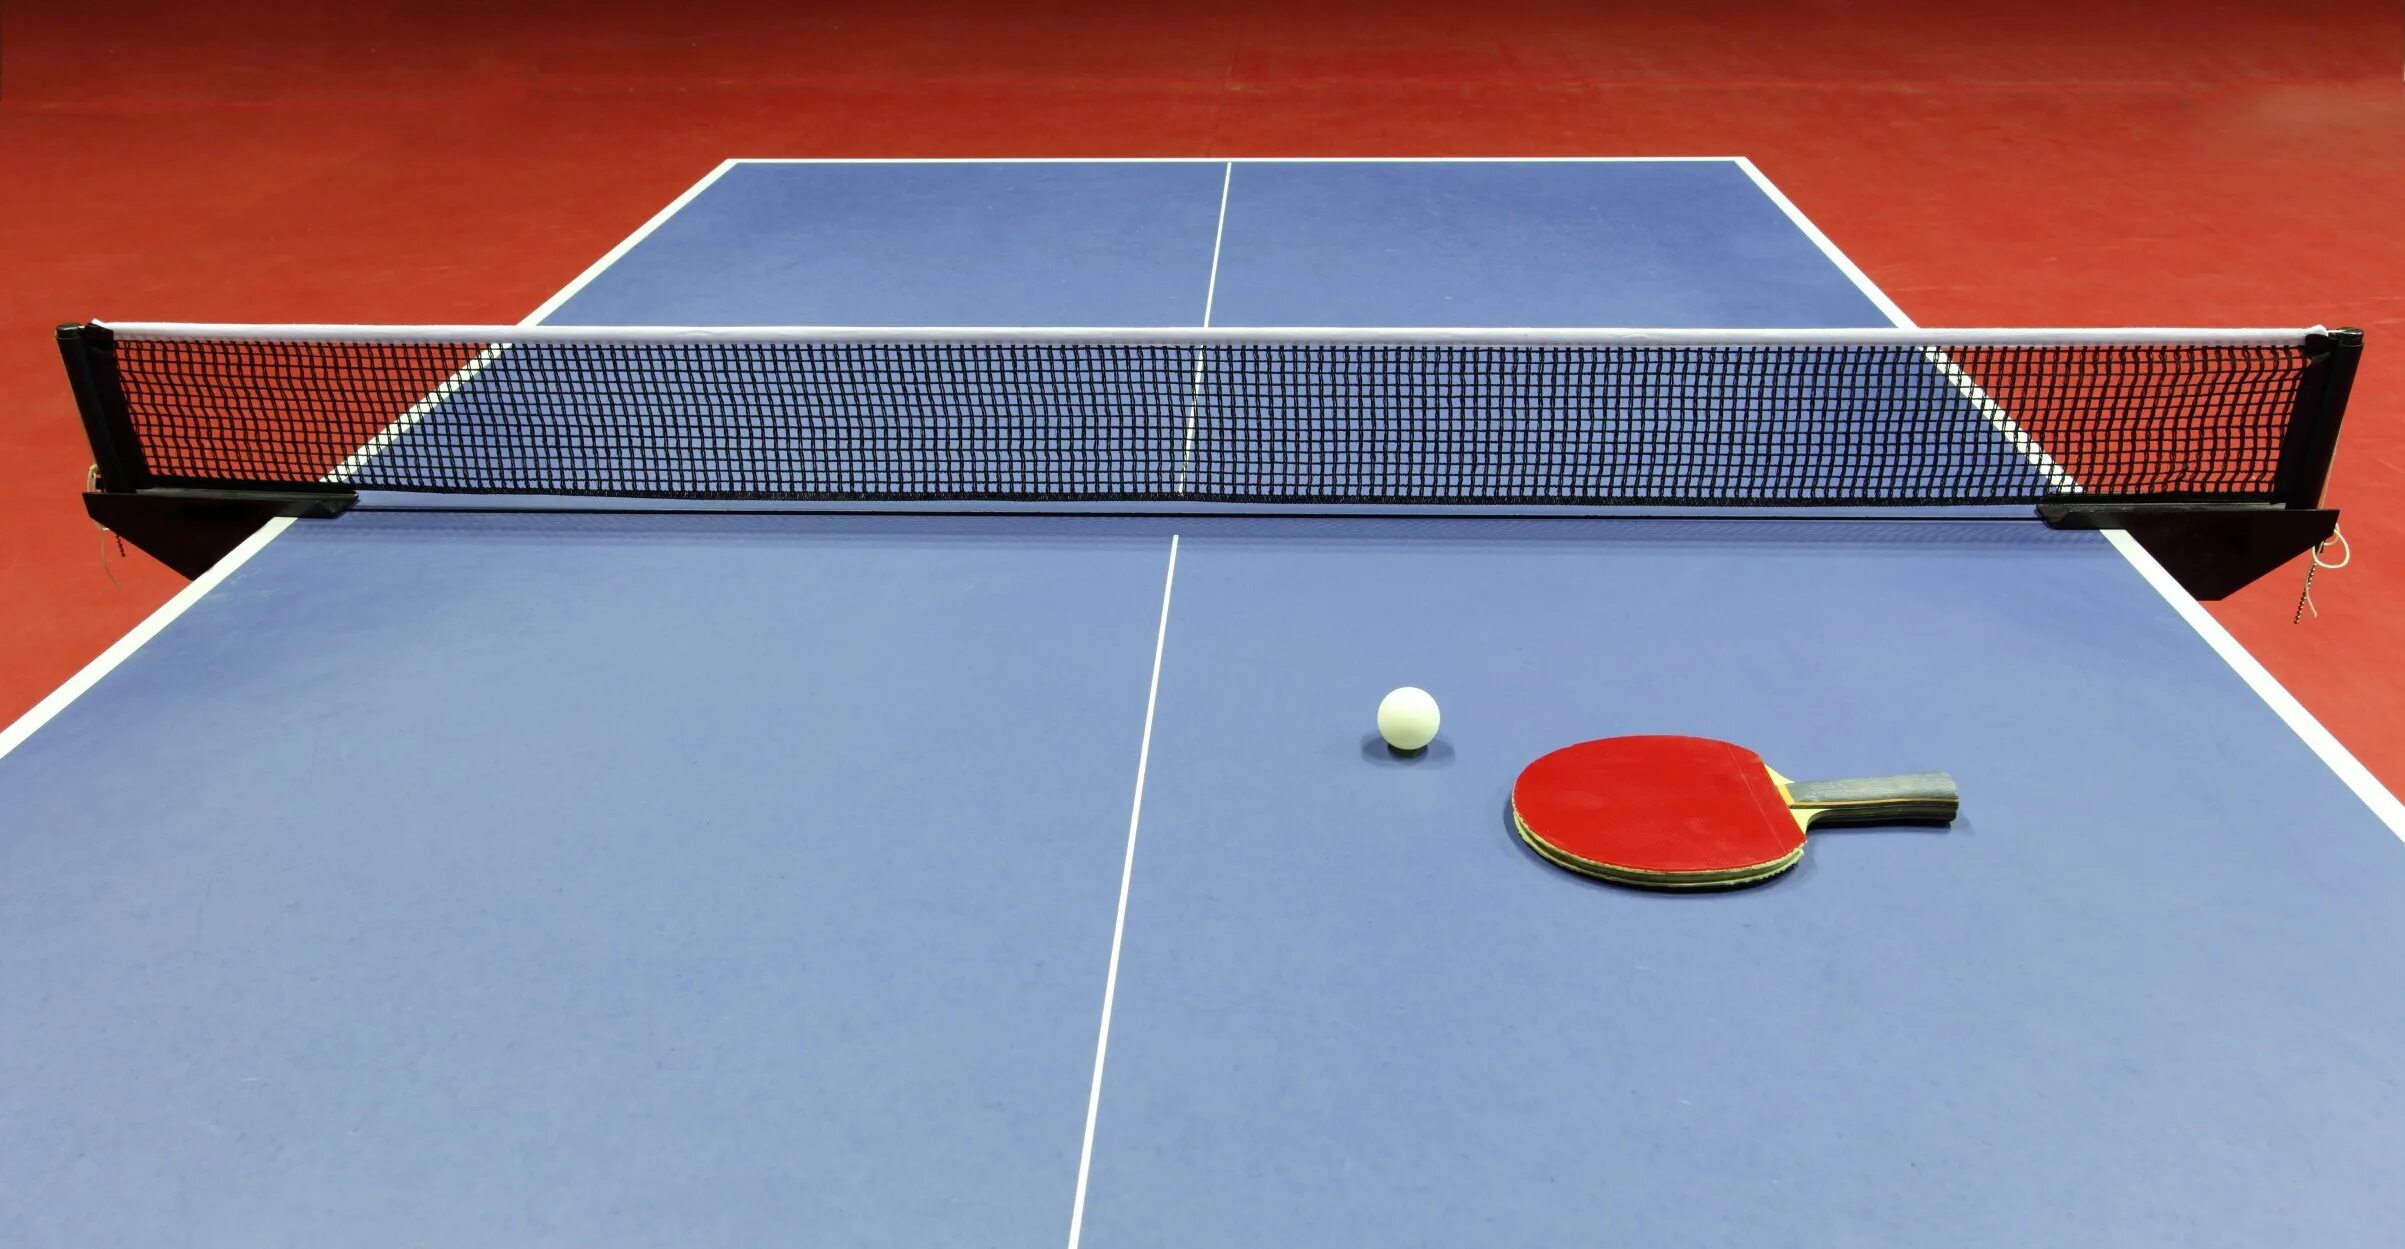 Настольный теннис (стол т1223). Stol Tennis” “Ping-Pong”. Пинпонг и настольный теннис. Теннисный стол пинг понг. Теннис игра с ракетками